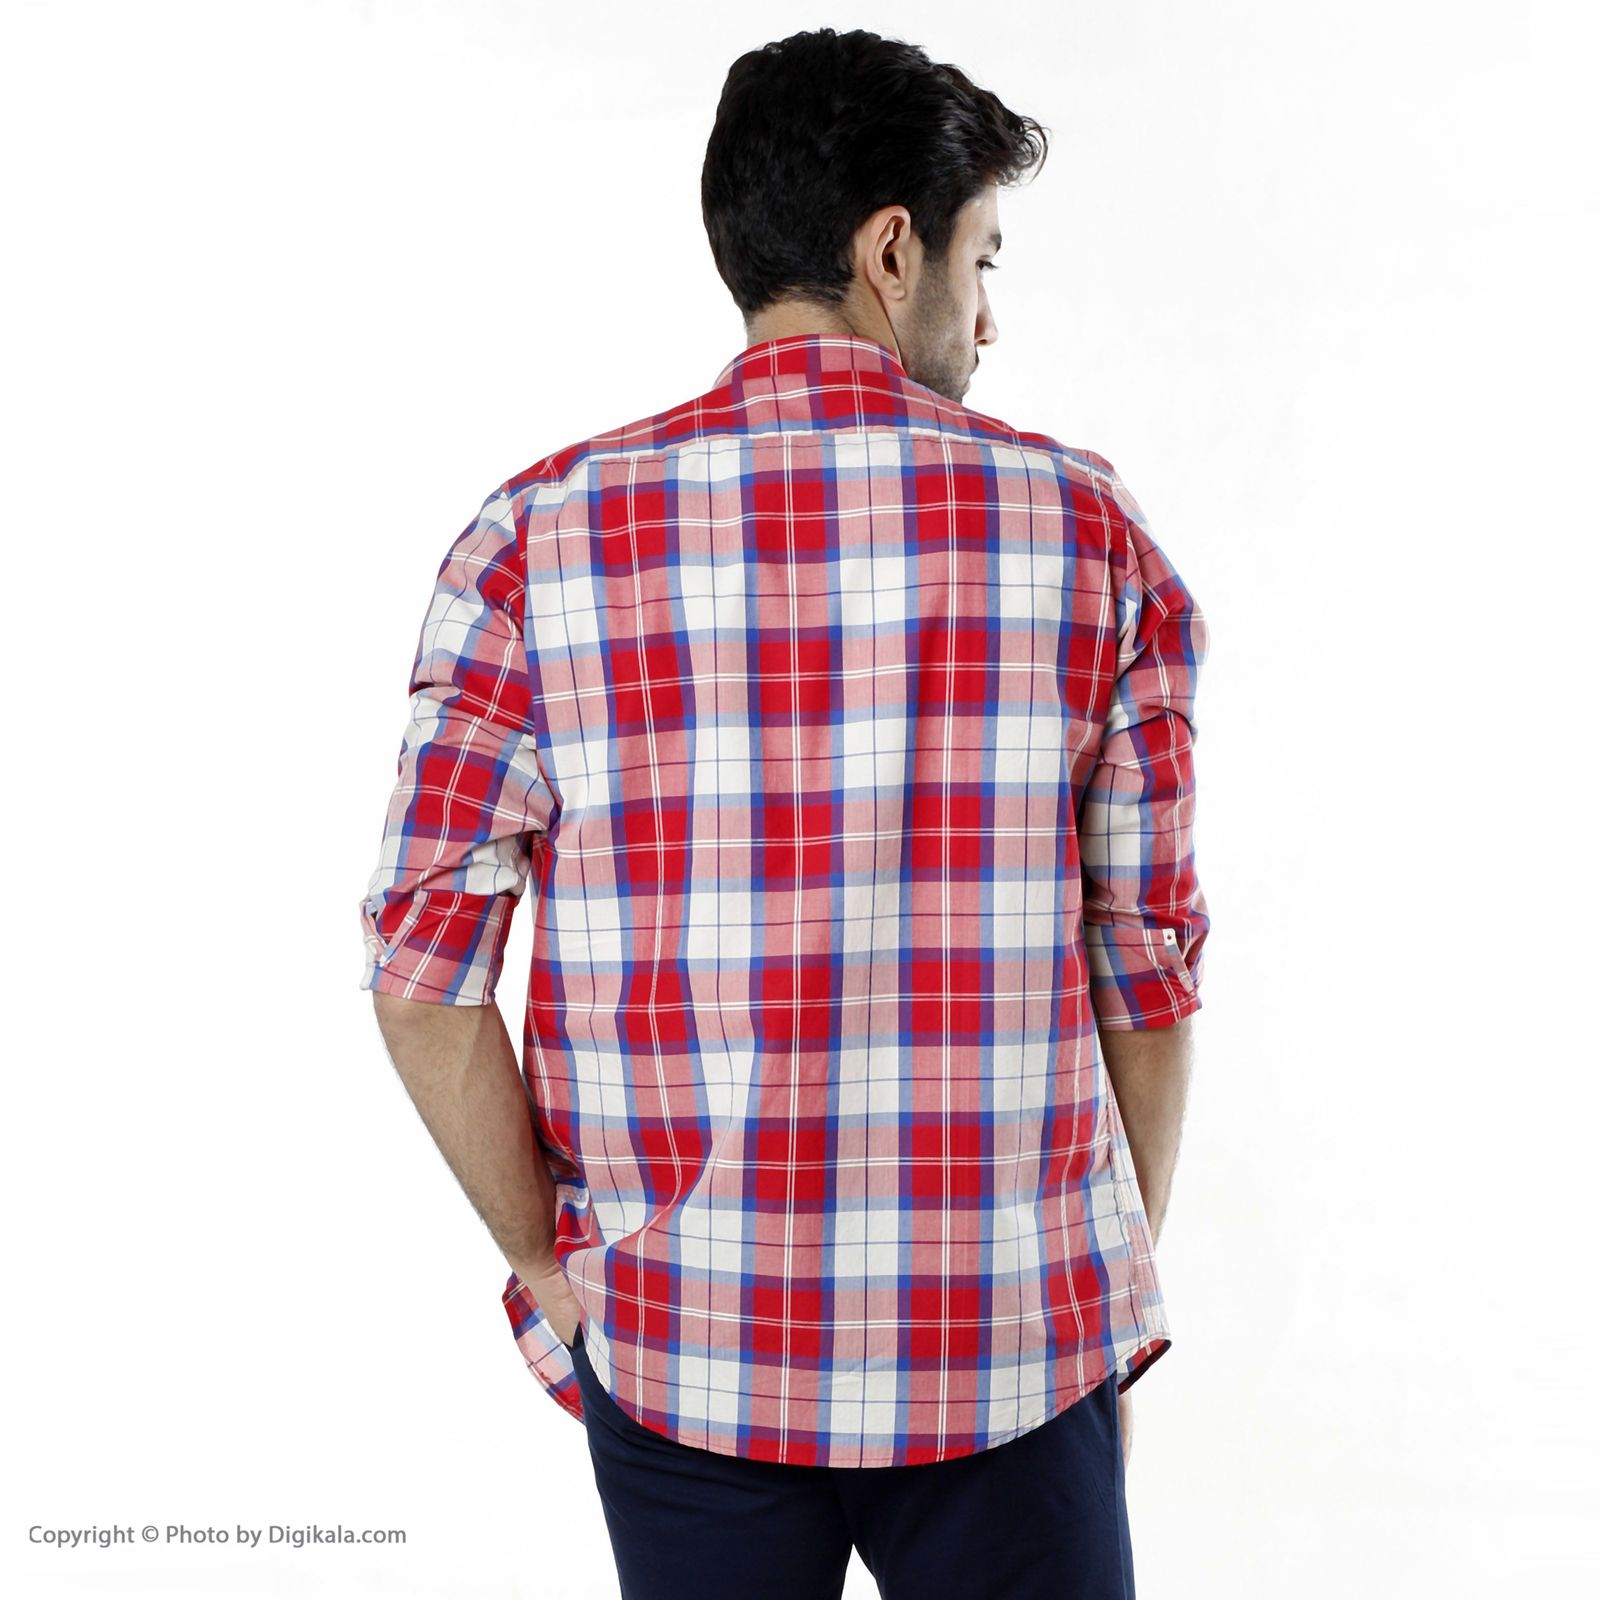 پیراهن مردانه اکزاترس مدل I012024234360004-234 -  - 8